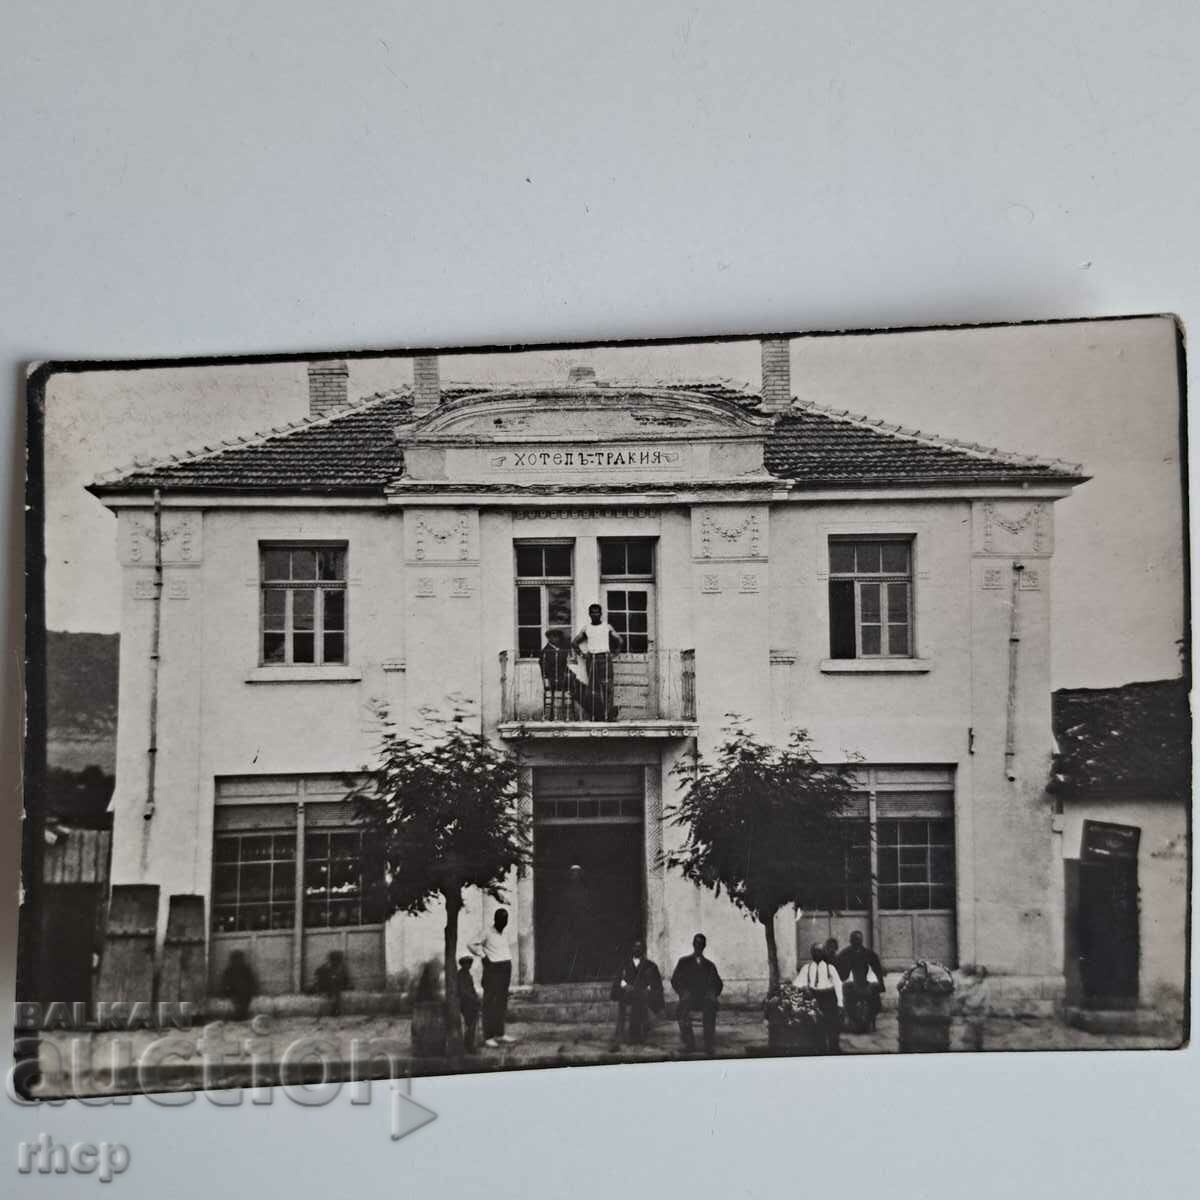 Ξενοδοχείο Trakia 1929 Βασίλειο της Βουλγαρίας παλιά φωτογραφία Plovdiv;